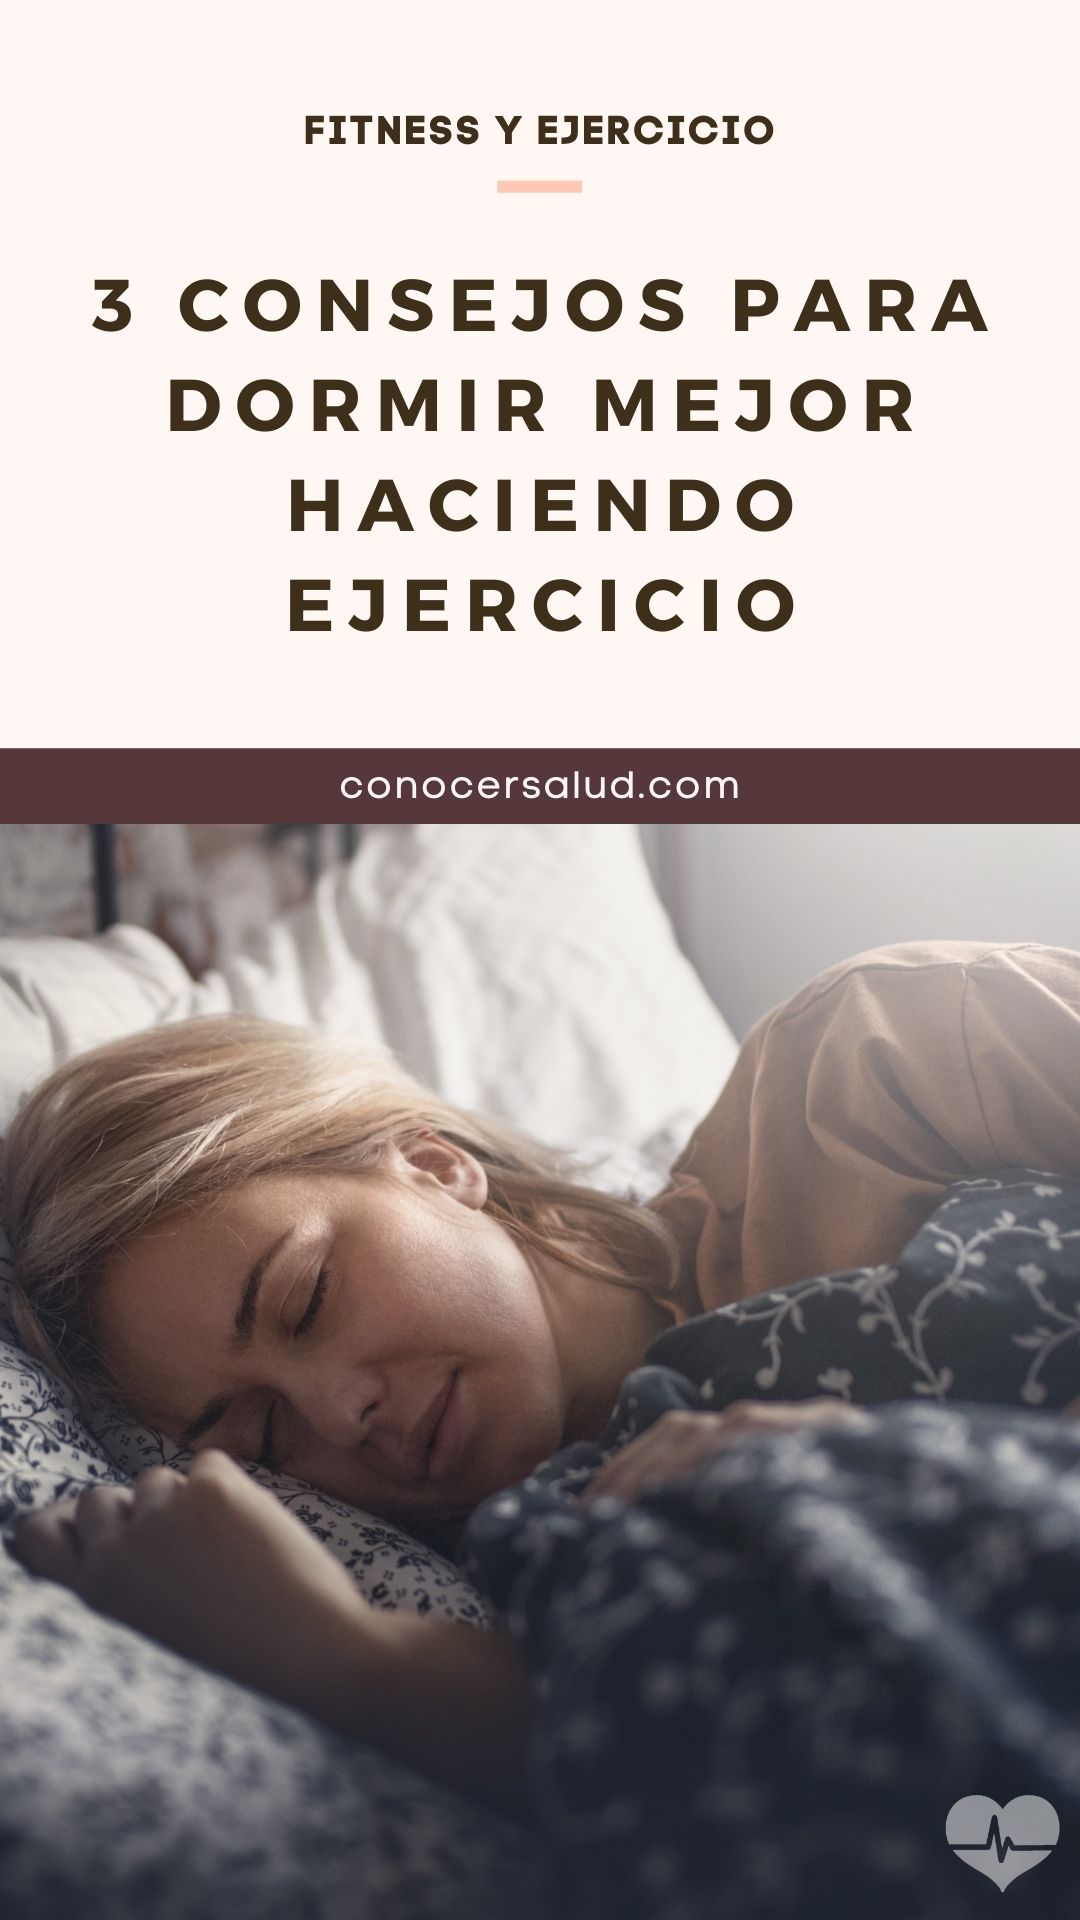 3 Consejos para dormir mejor haciendo ejercicio